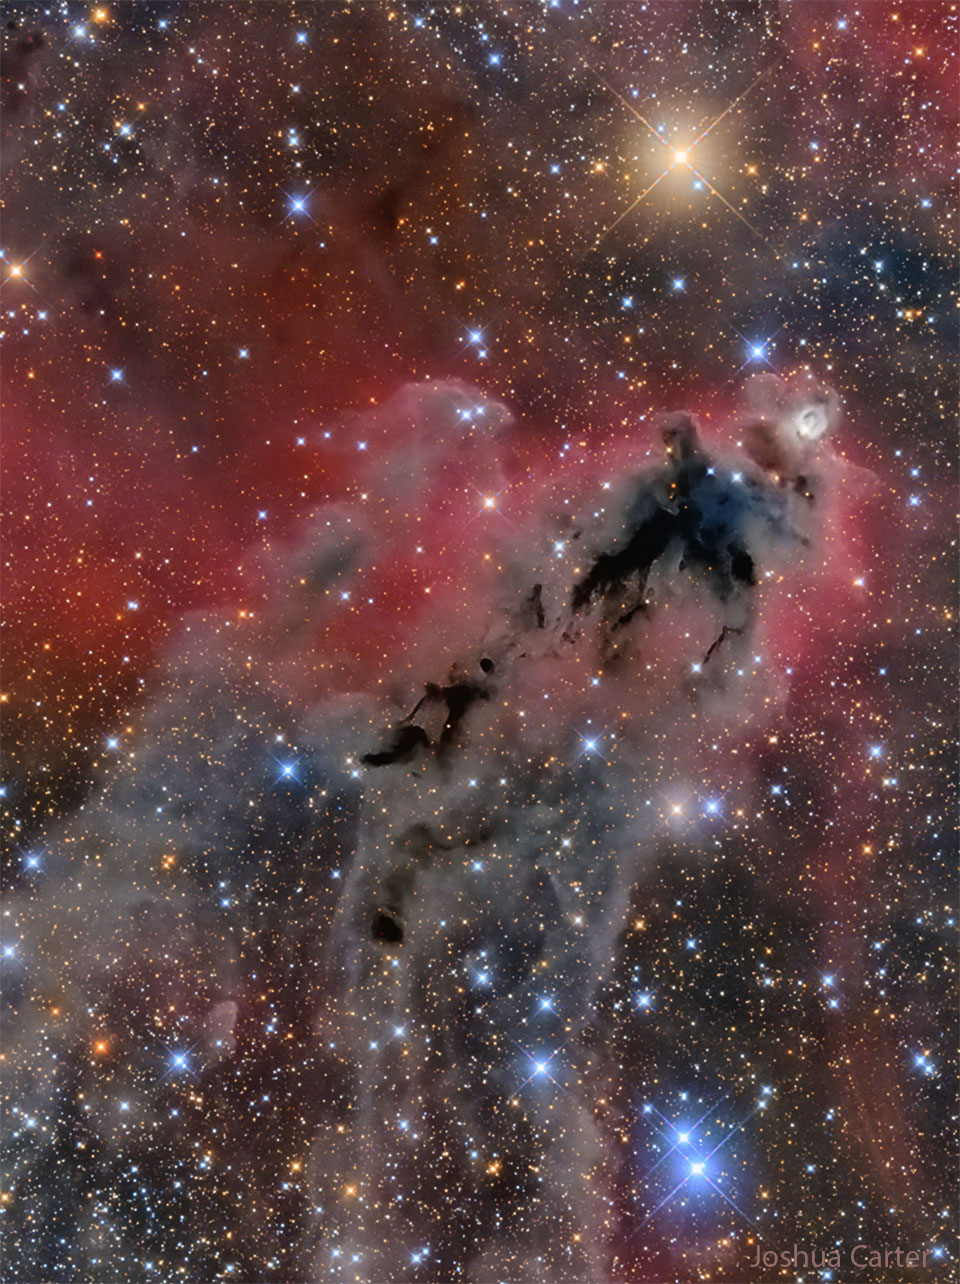 Lynds Dunkler Nebel 1622 im Sternbild Orion ist eine dunle Wolke, die sichtbar ist, weil sie vor einer schwach rot leuchtenden Wasserstoffwolke liegt.